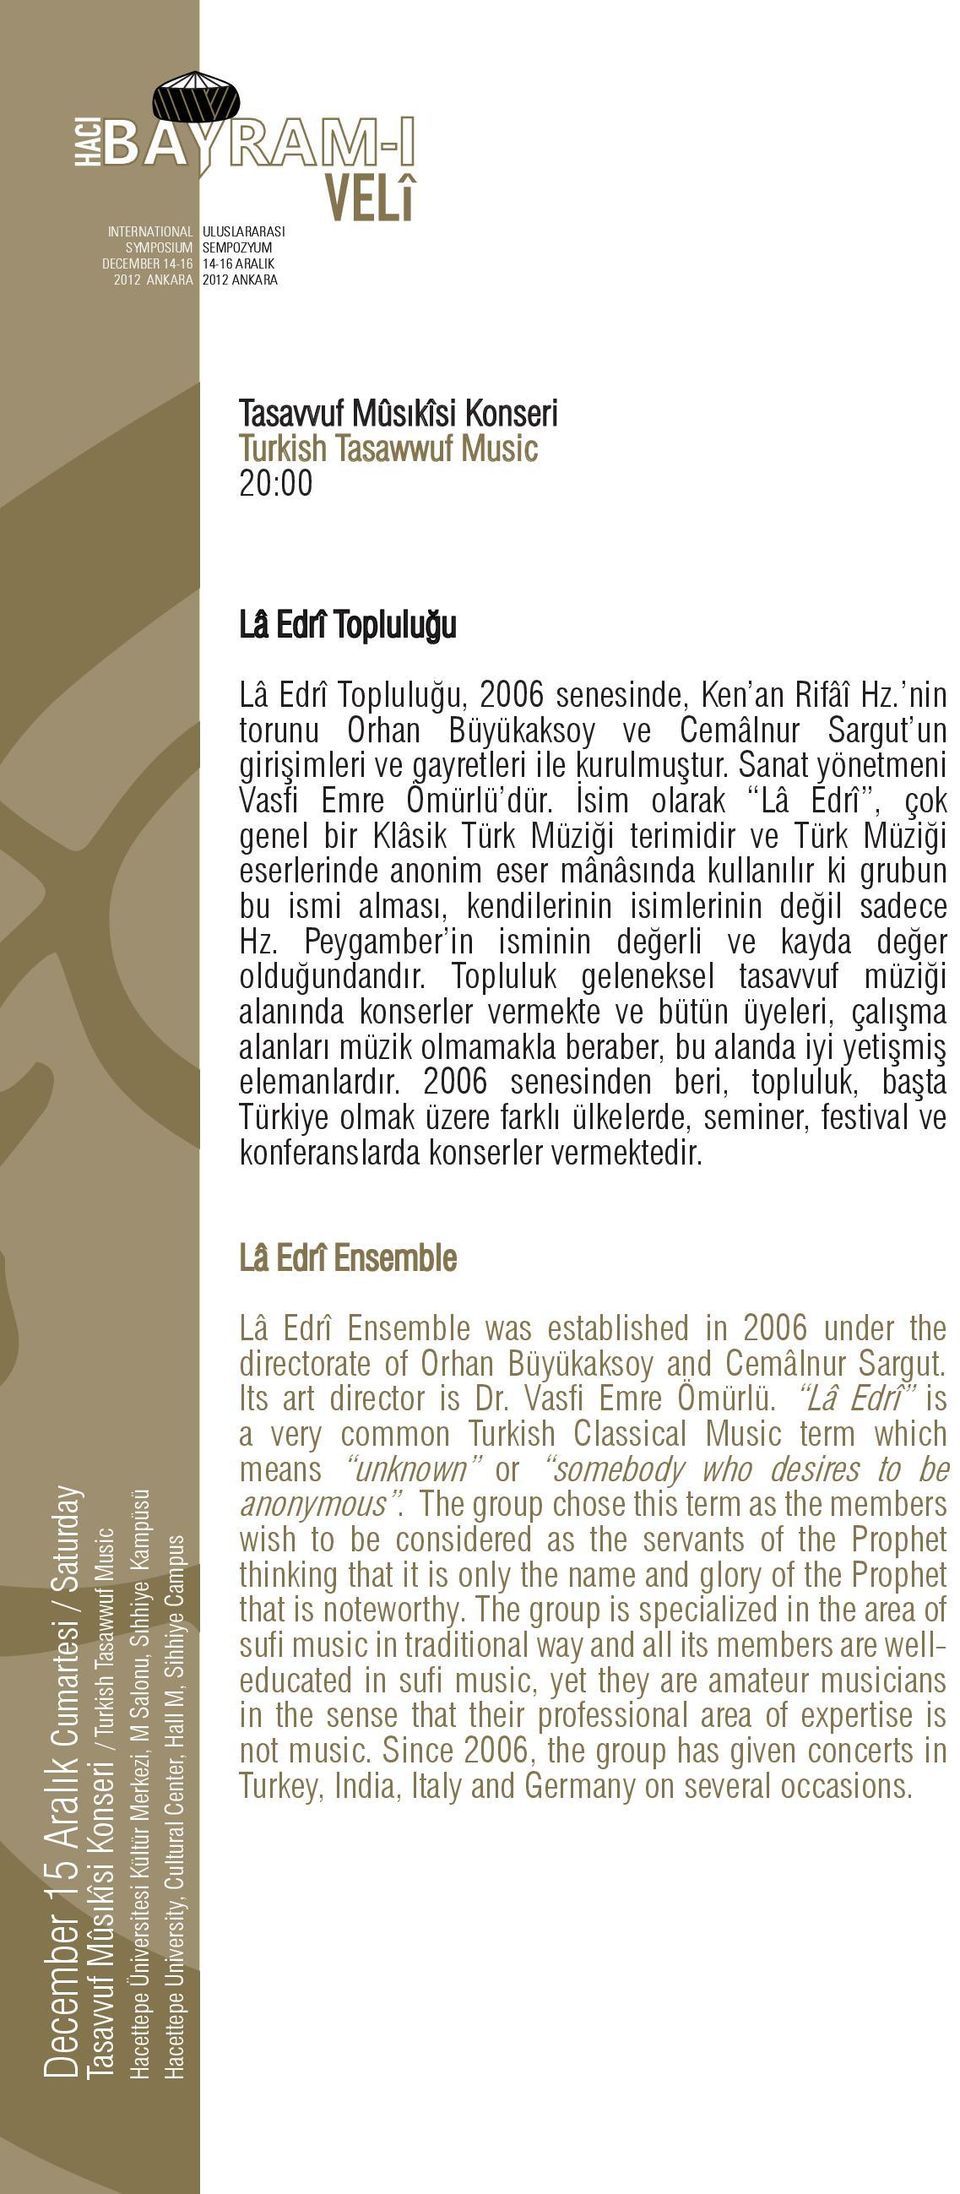 İsim olarak Lâ Edrî, çok genel bir Klâsik Türk Müziği terimidir ve Türk Müziği eserlerinde anonim eser mânâsında kullanılır ki grubun bu ismi alması, kendilerinin isimlerinin değil sadece Hz.